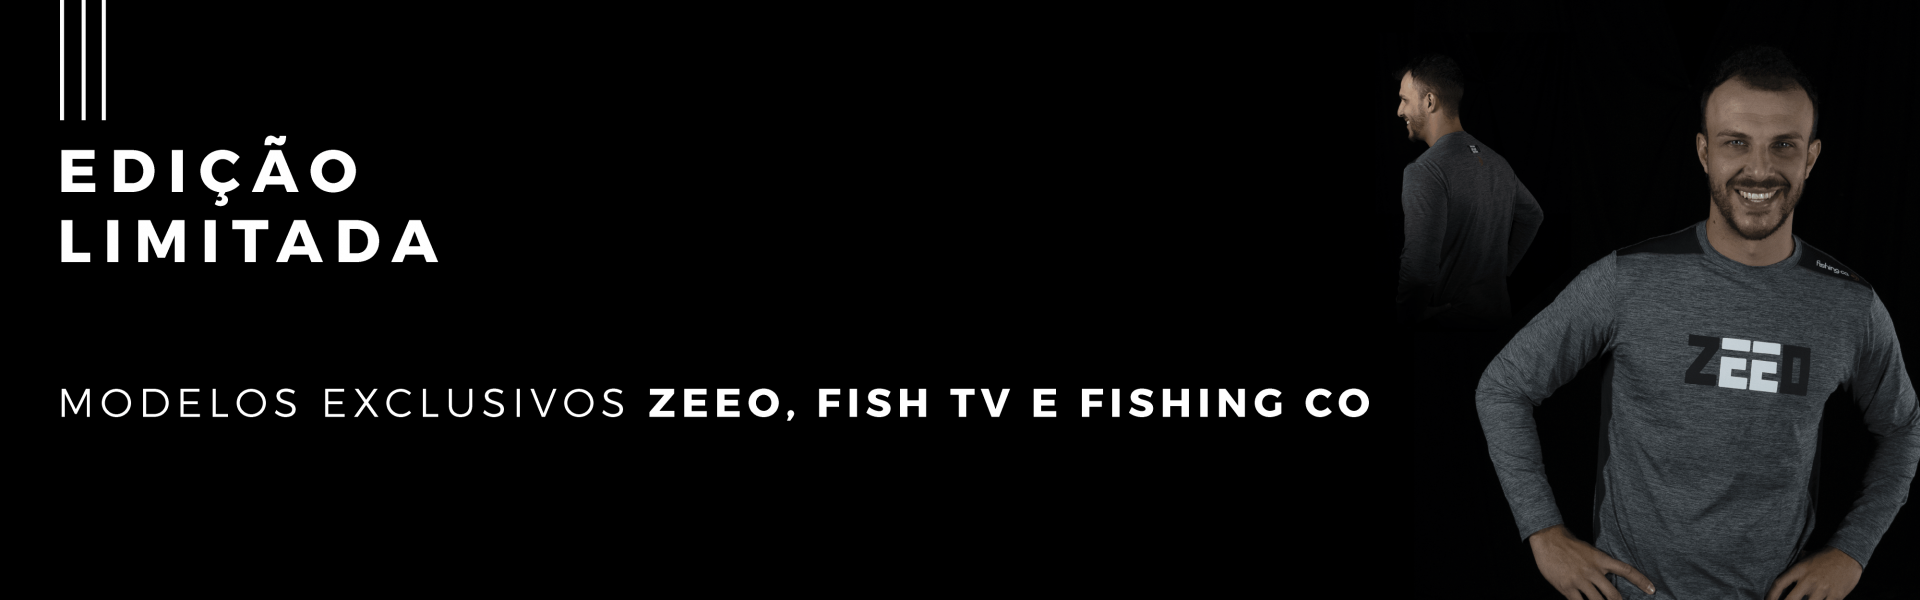 ZEEO e Fishing Co comemoram o dia do pescador com edição limitada